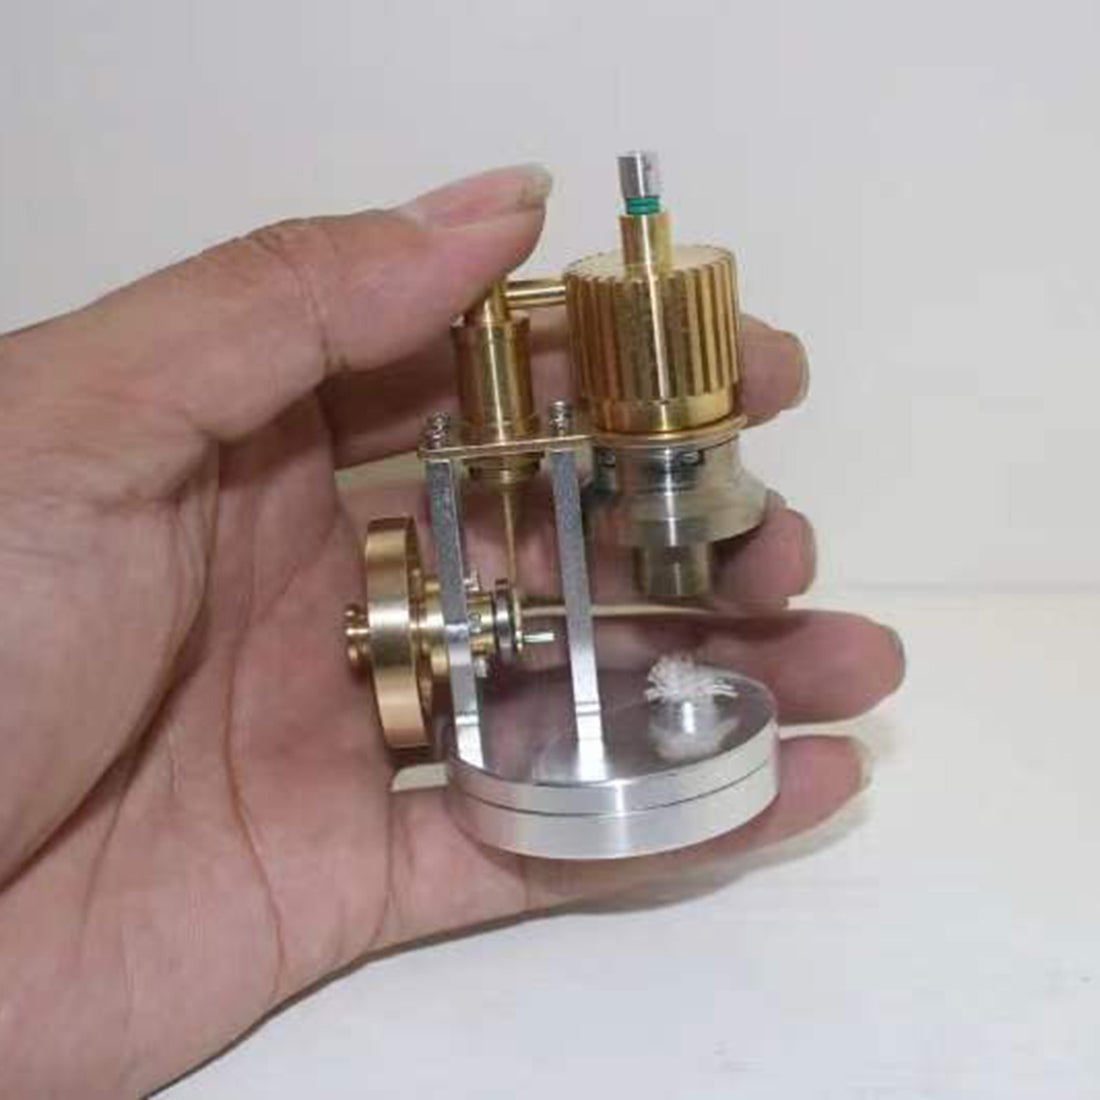 ENJOMOR Hot Air Ringbom Engine Stirling Engine Model Pocket Size - stirlingkit